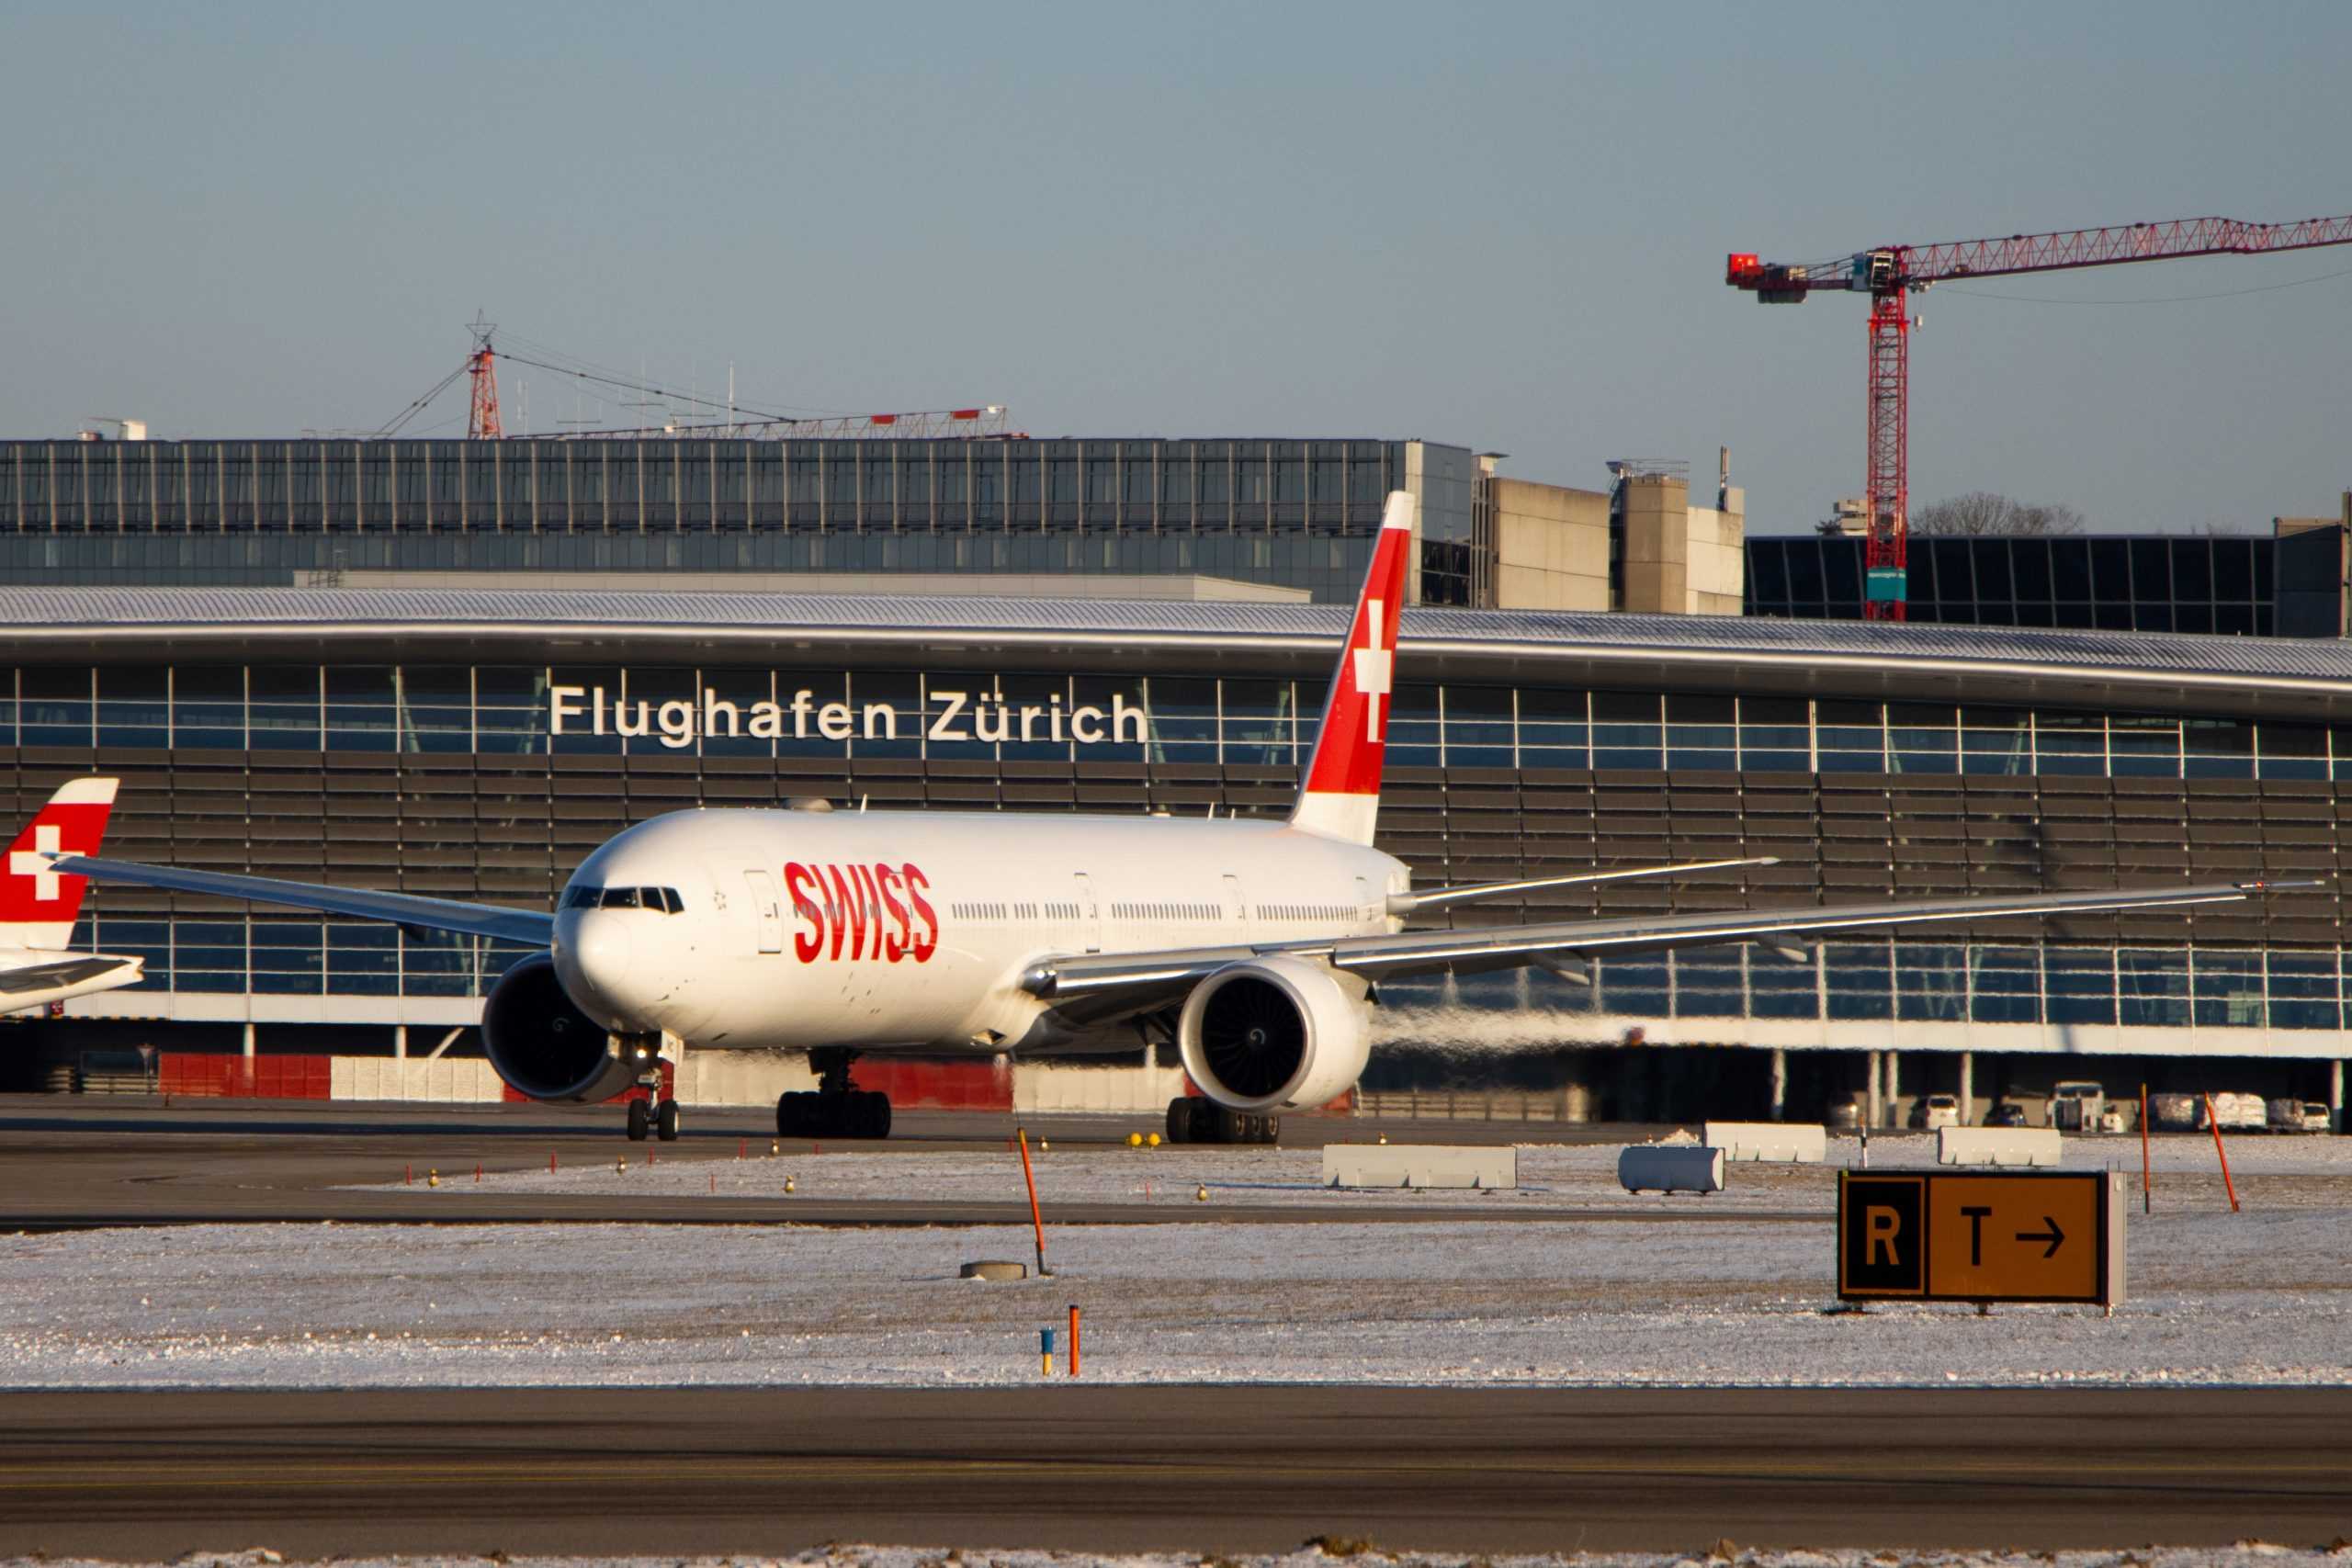 Zurich Airport (ZRH) - Zurich, Switzerland